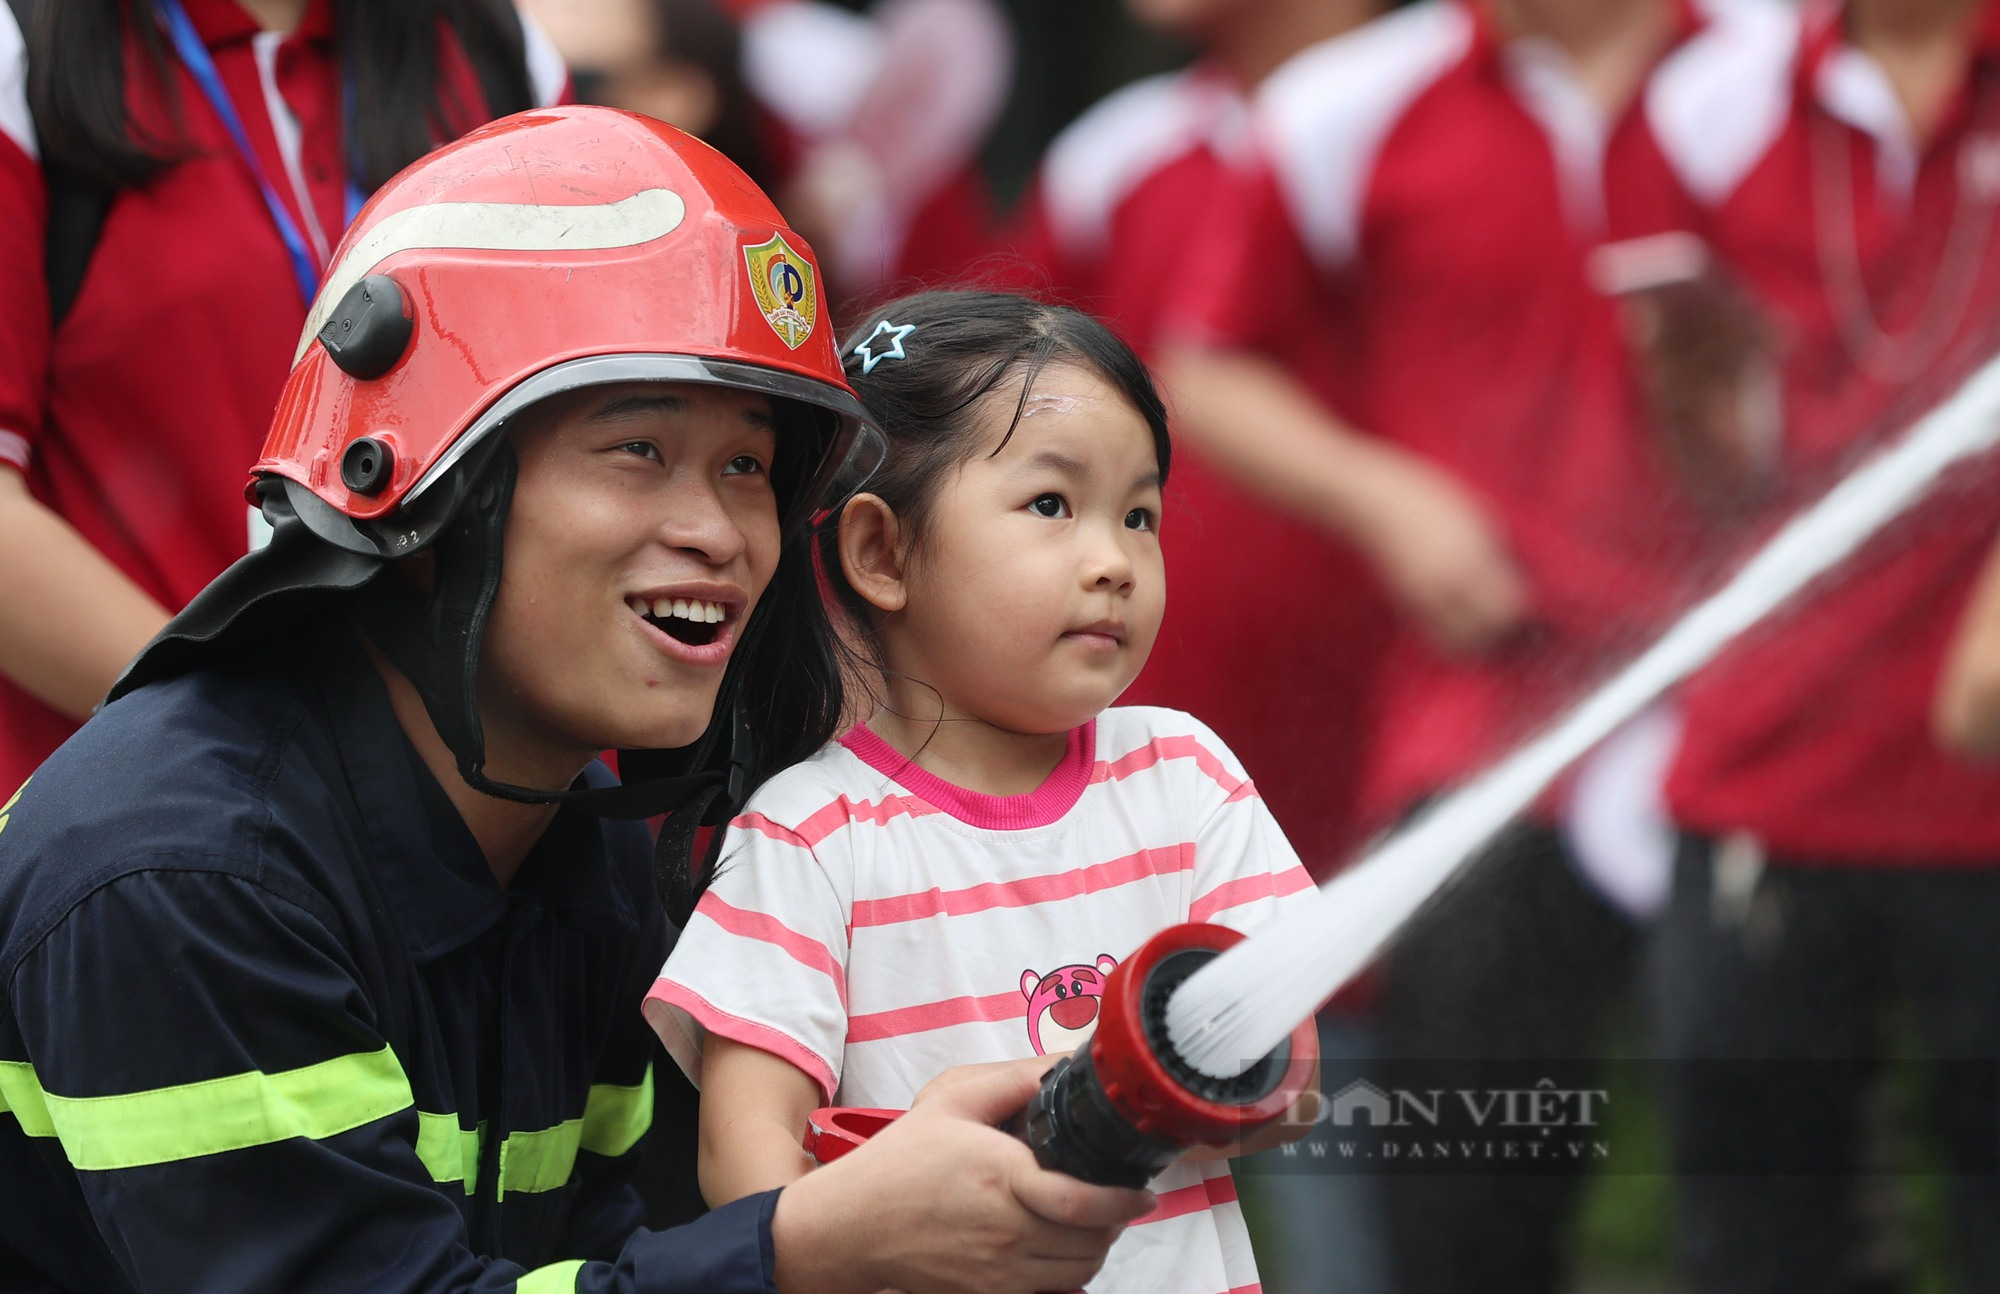 Trẻ em Hà Nội hào hứng dập lửa, thử đu dây và lên xe thang cứu hỏa cao hàng chục mét - Ảnh 6.